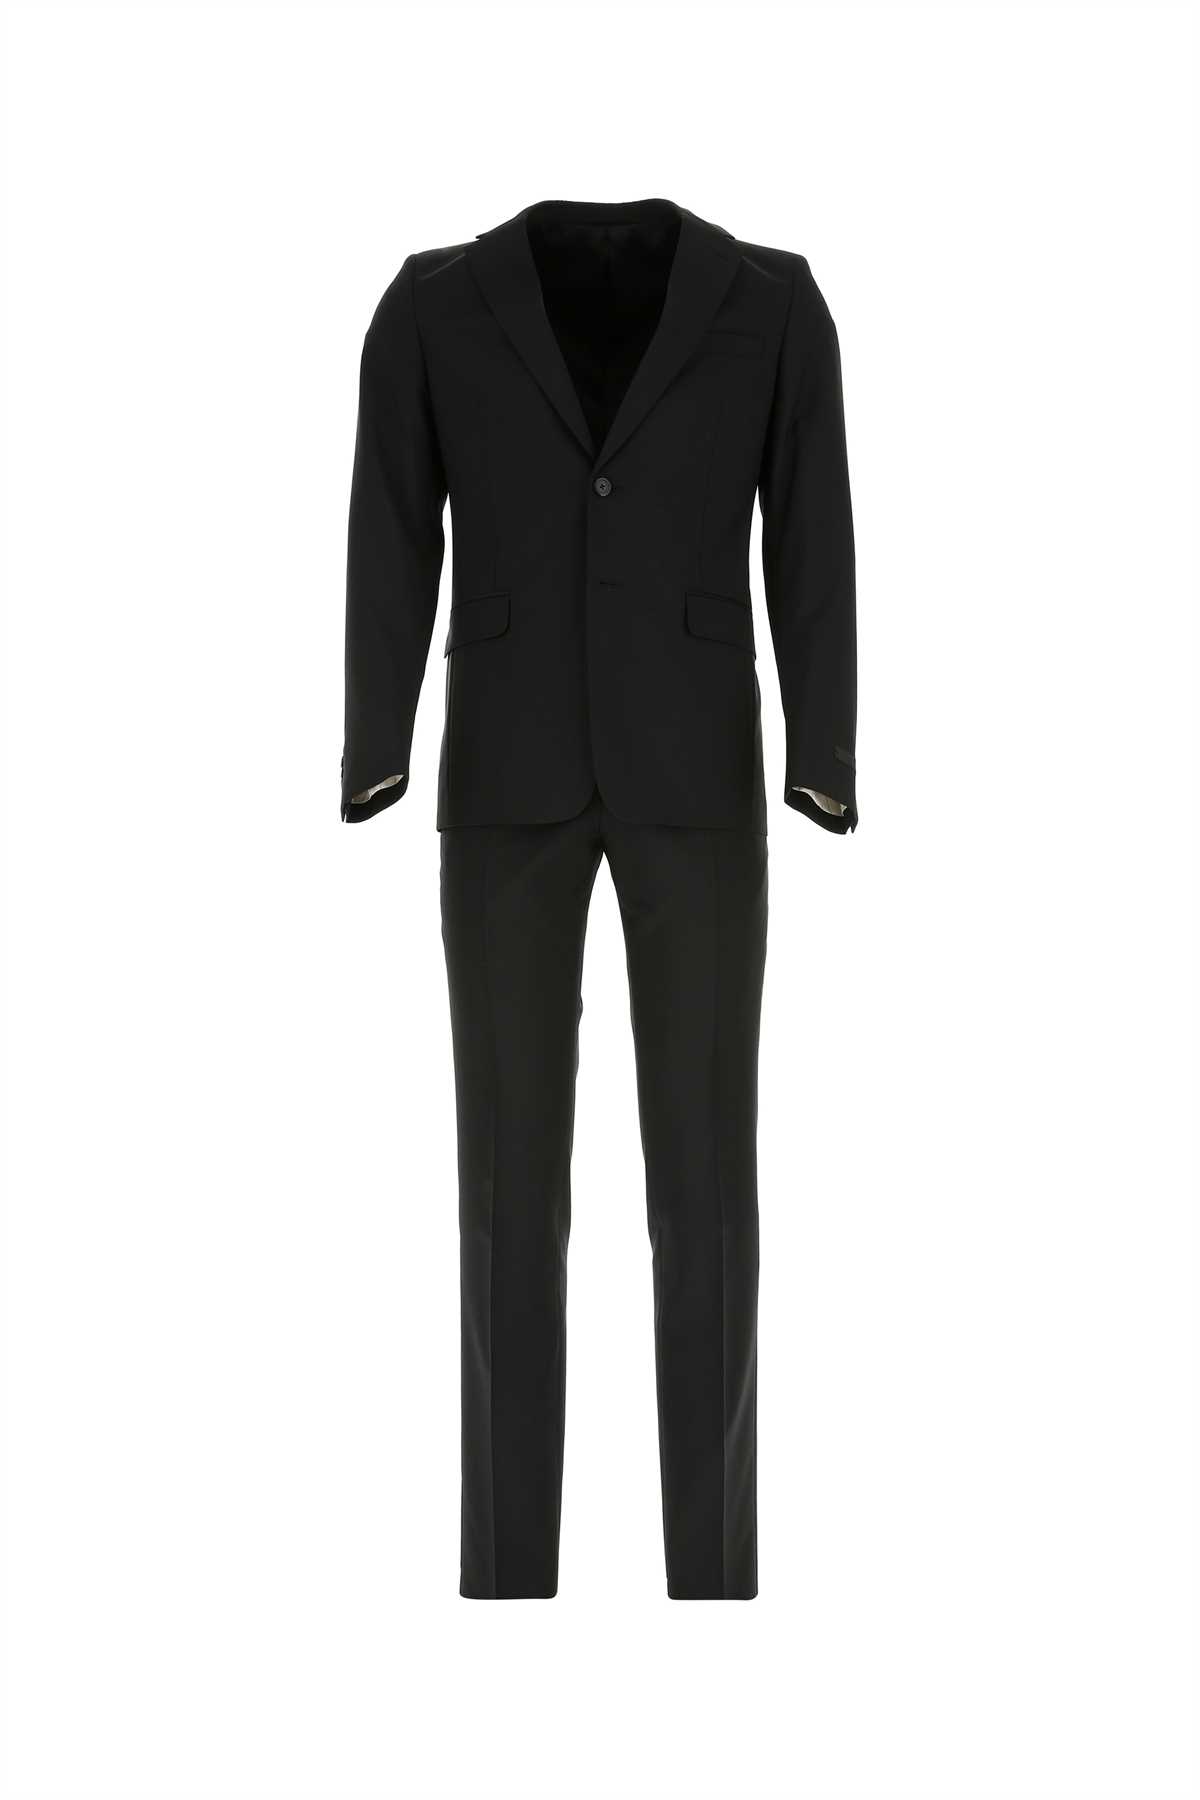 Prada Black Wool Blend Suit In Nero